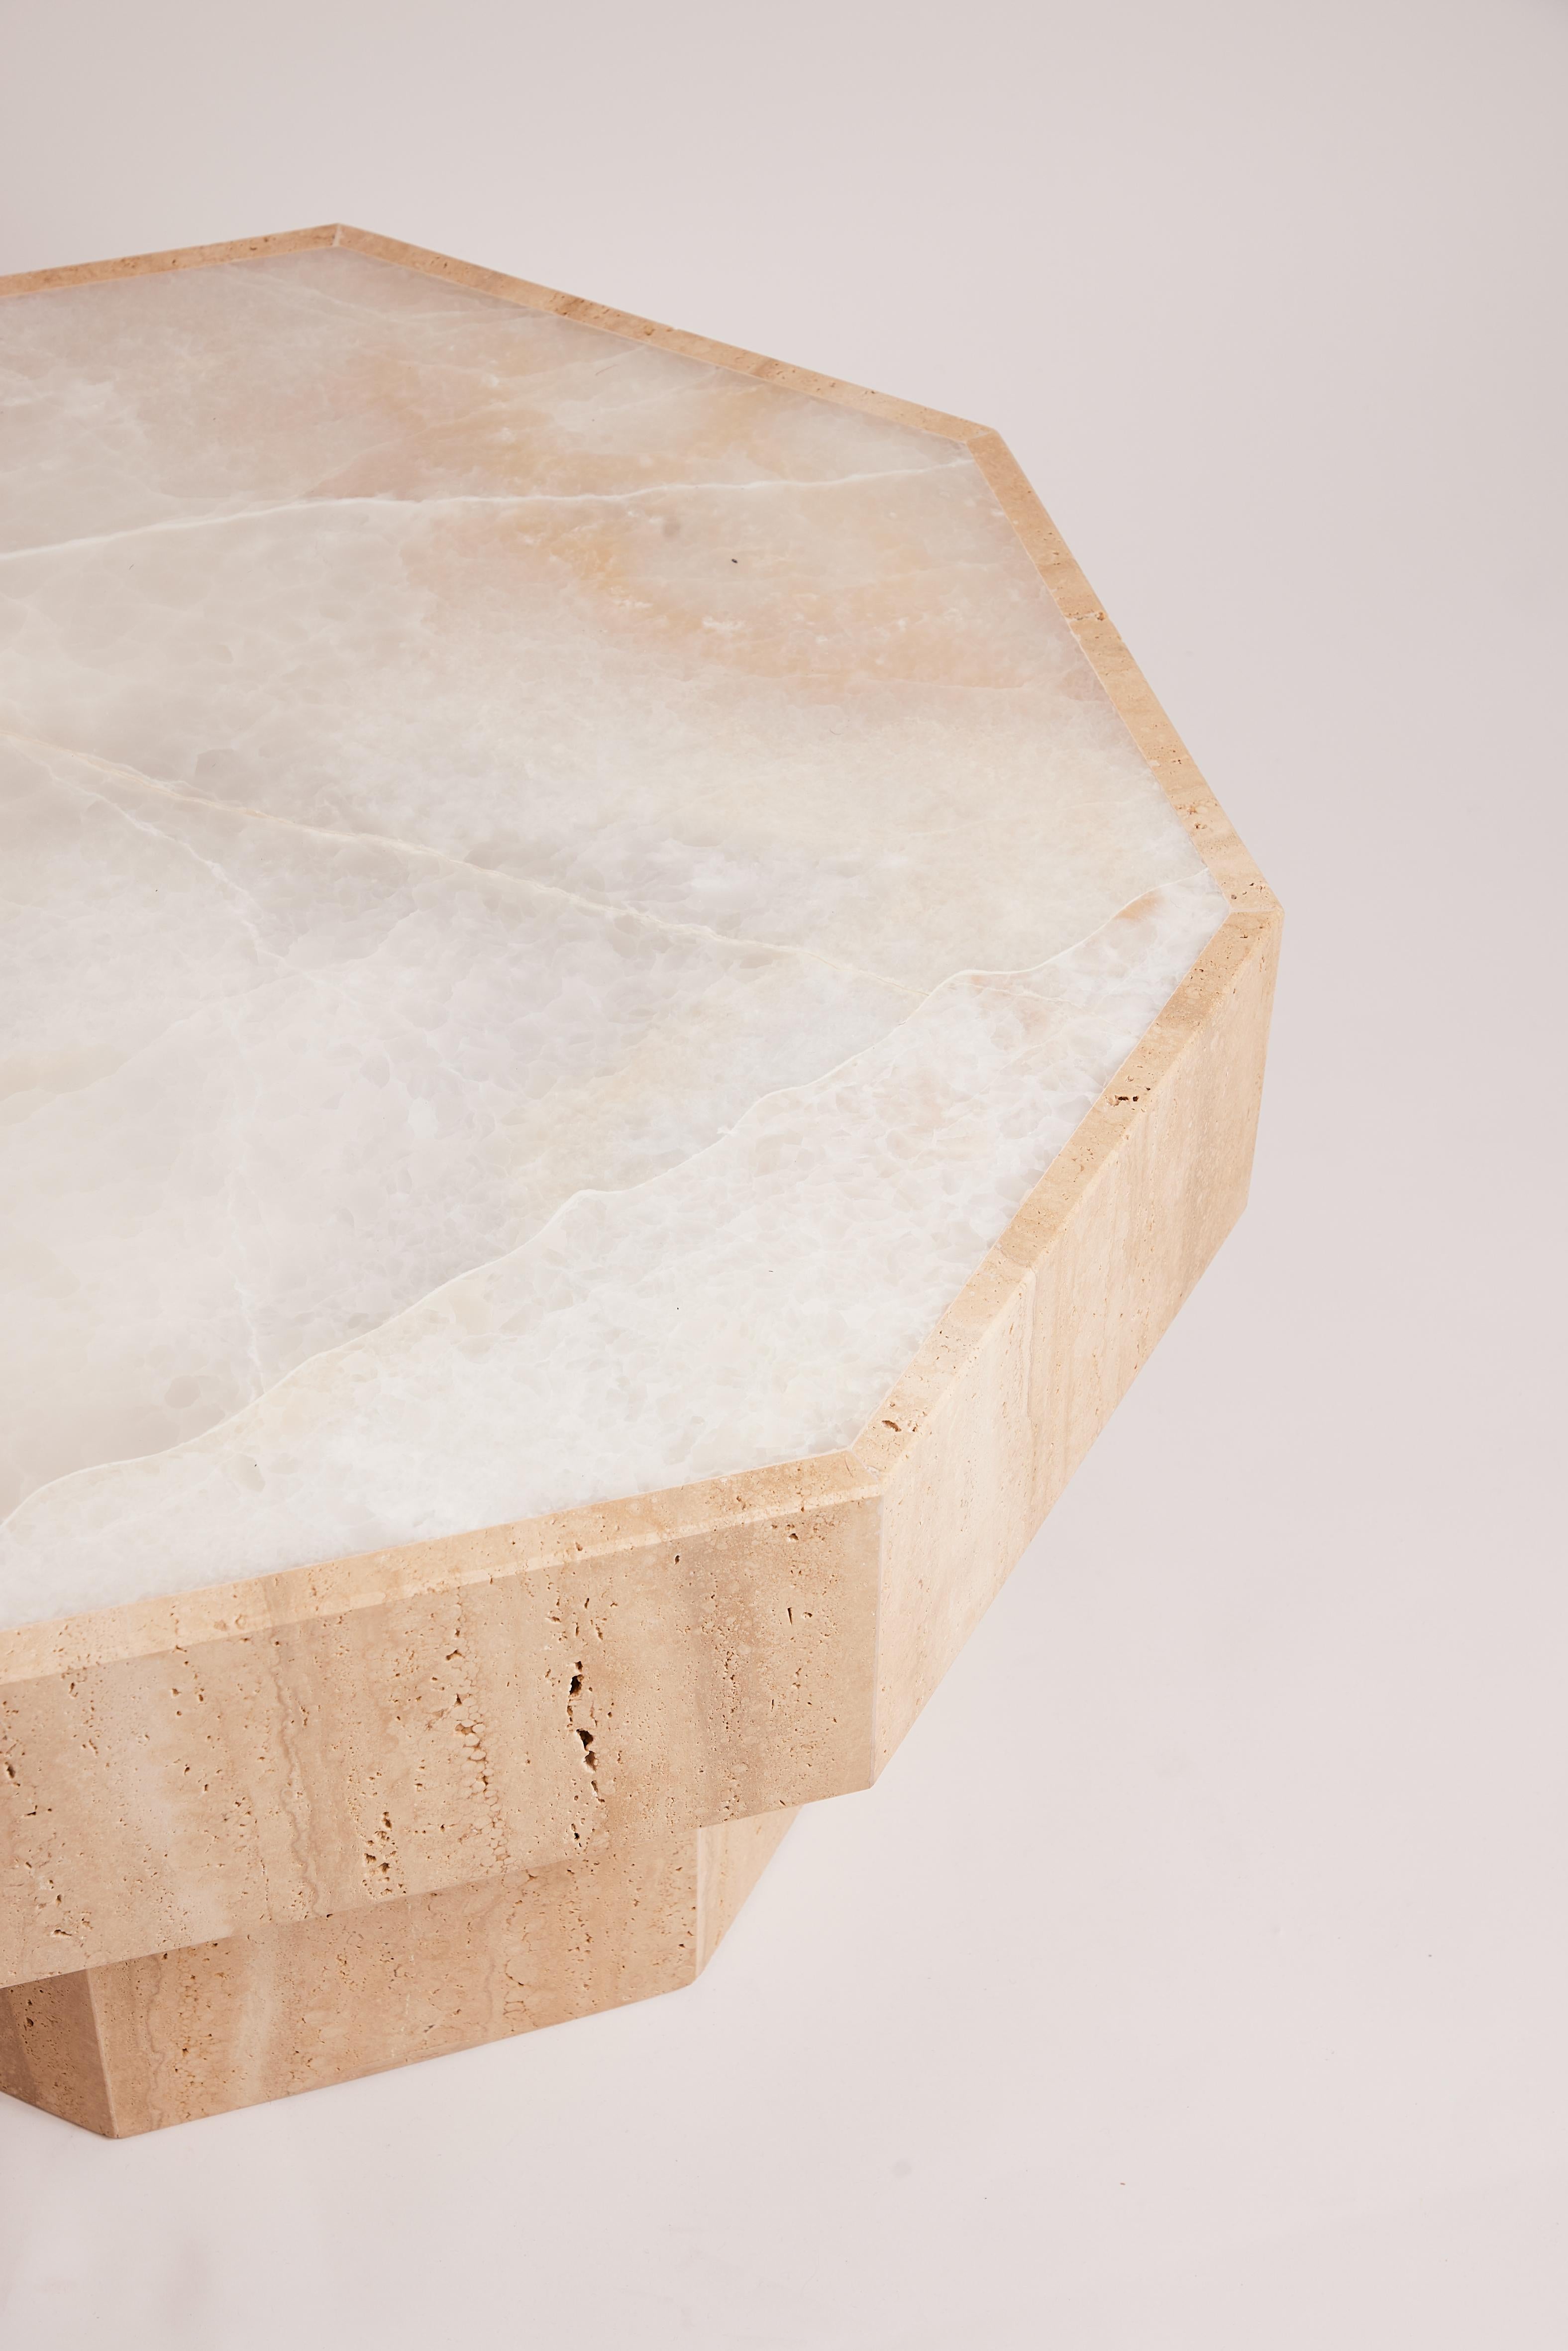 La table basse Simone, en onyx et travertin, présente deux types de pierres naturelles connues pour leur beauté unique et leurs propriétés durables. L'onyx donne à la table des veines subtilement translucides dans des teintes allant du blanc crème